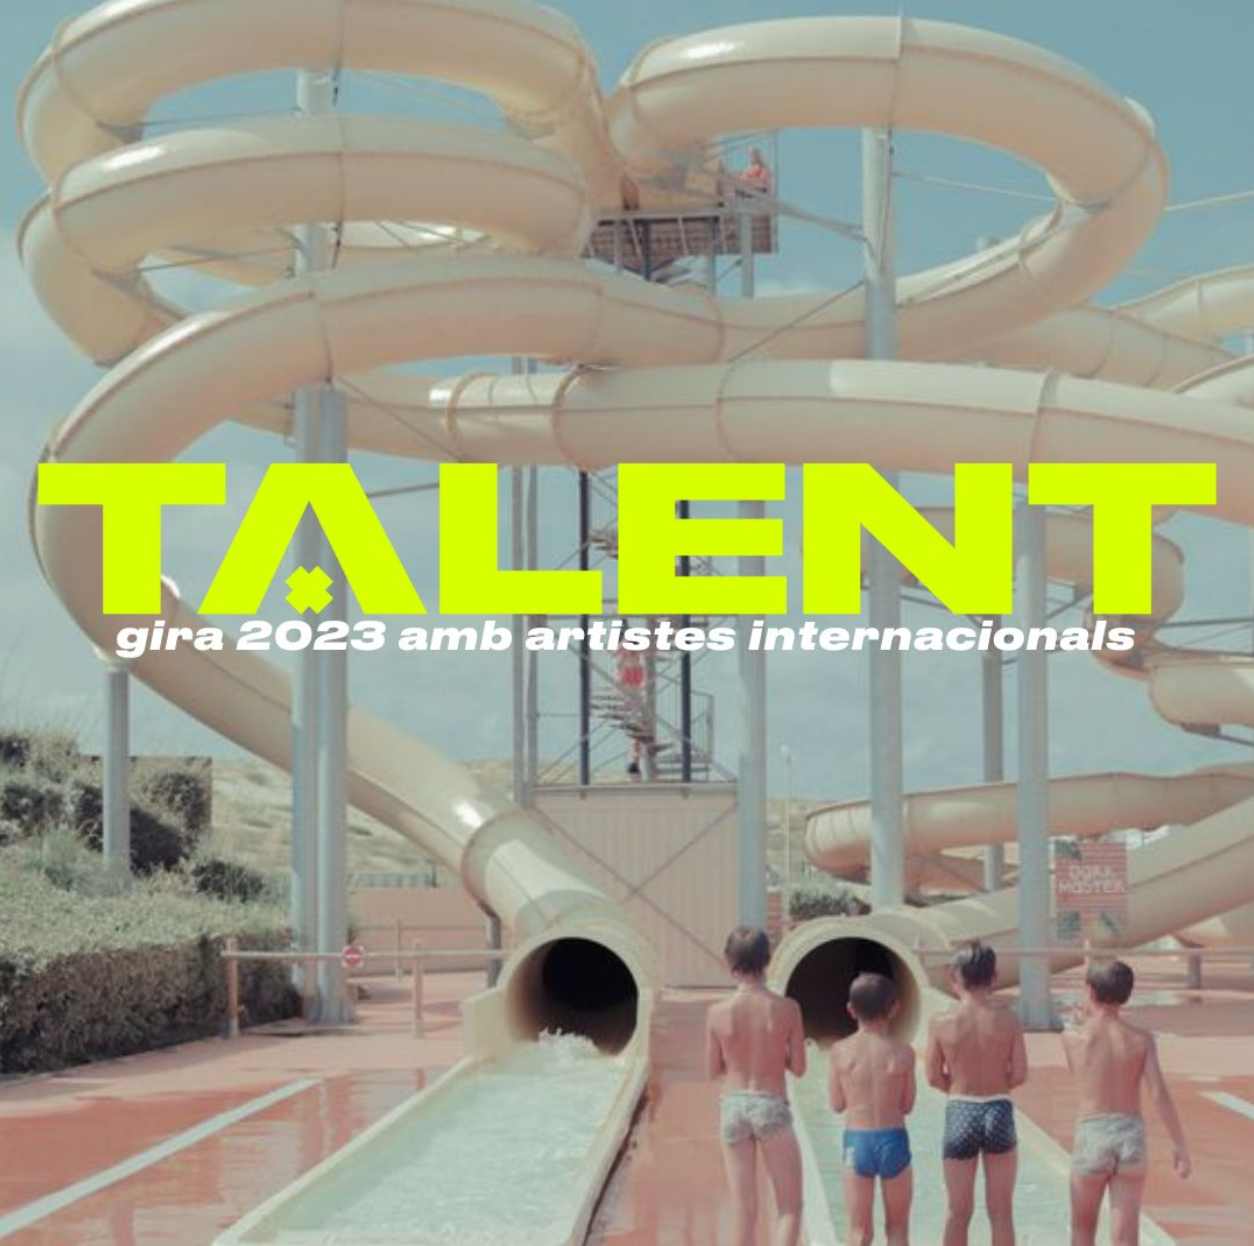 Gires Internacionals de Talent Barcelona: Rubén Blades, Wilco i Calexico